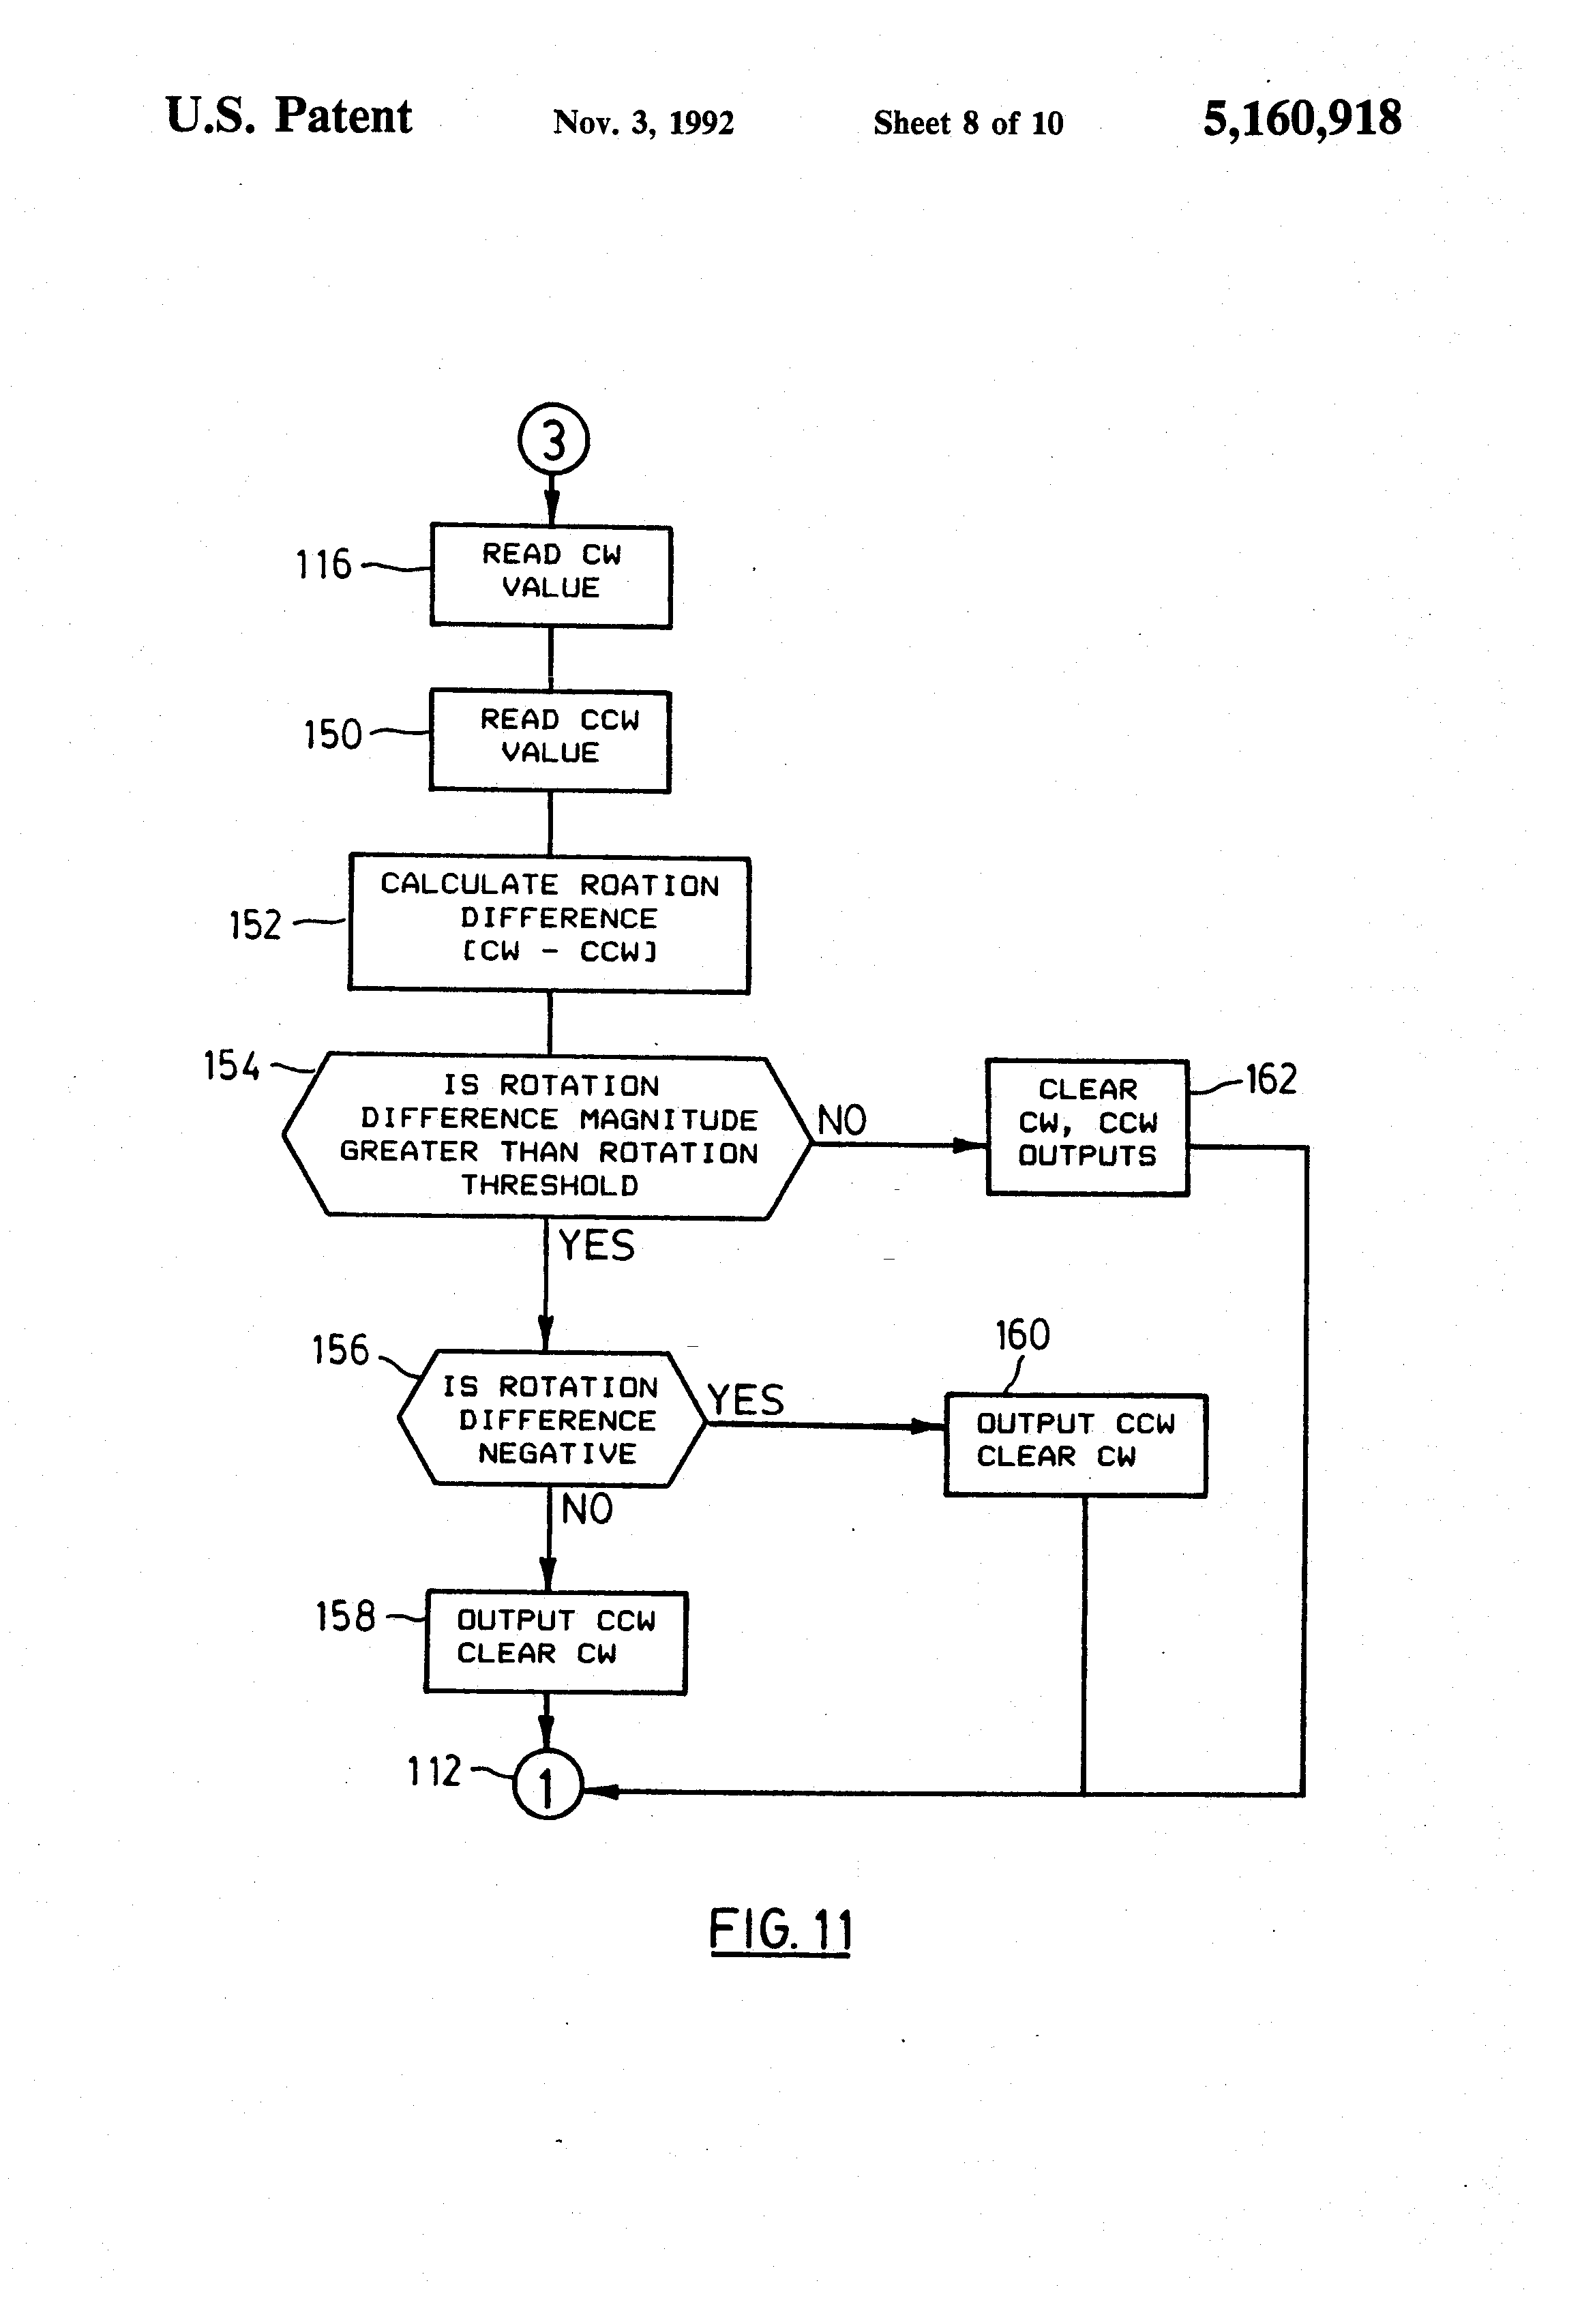 danfoss 750 wiring diagram